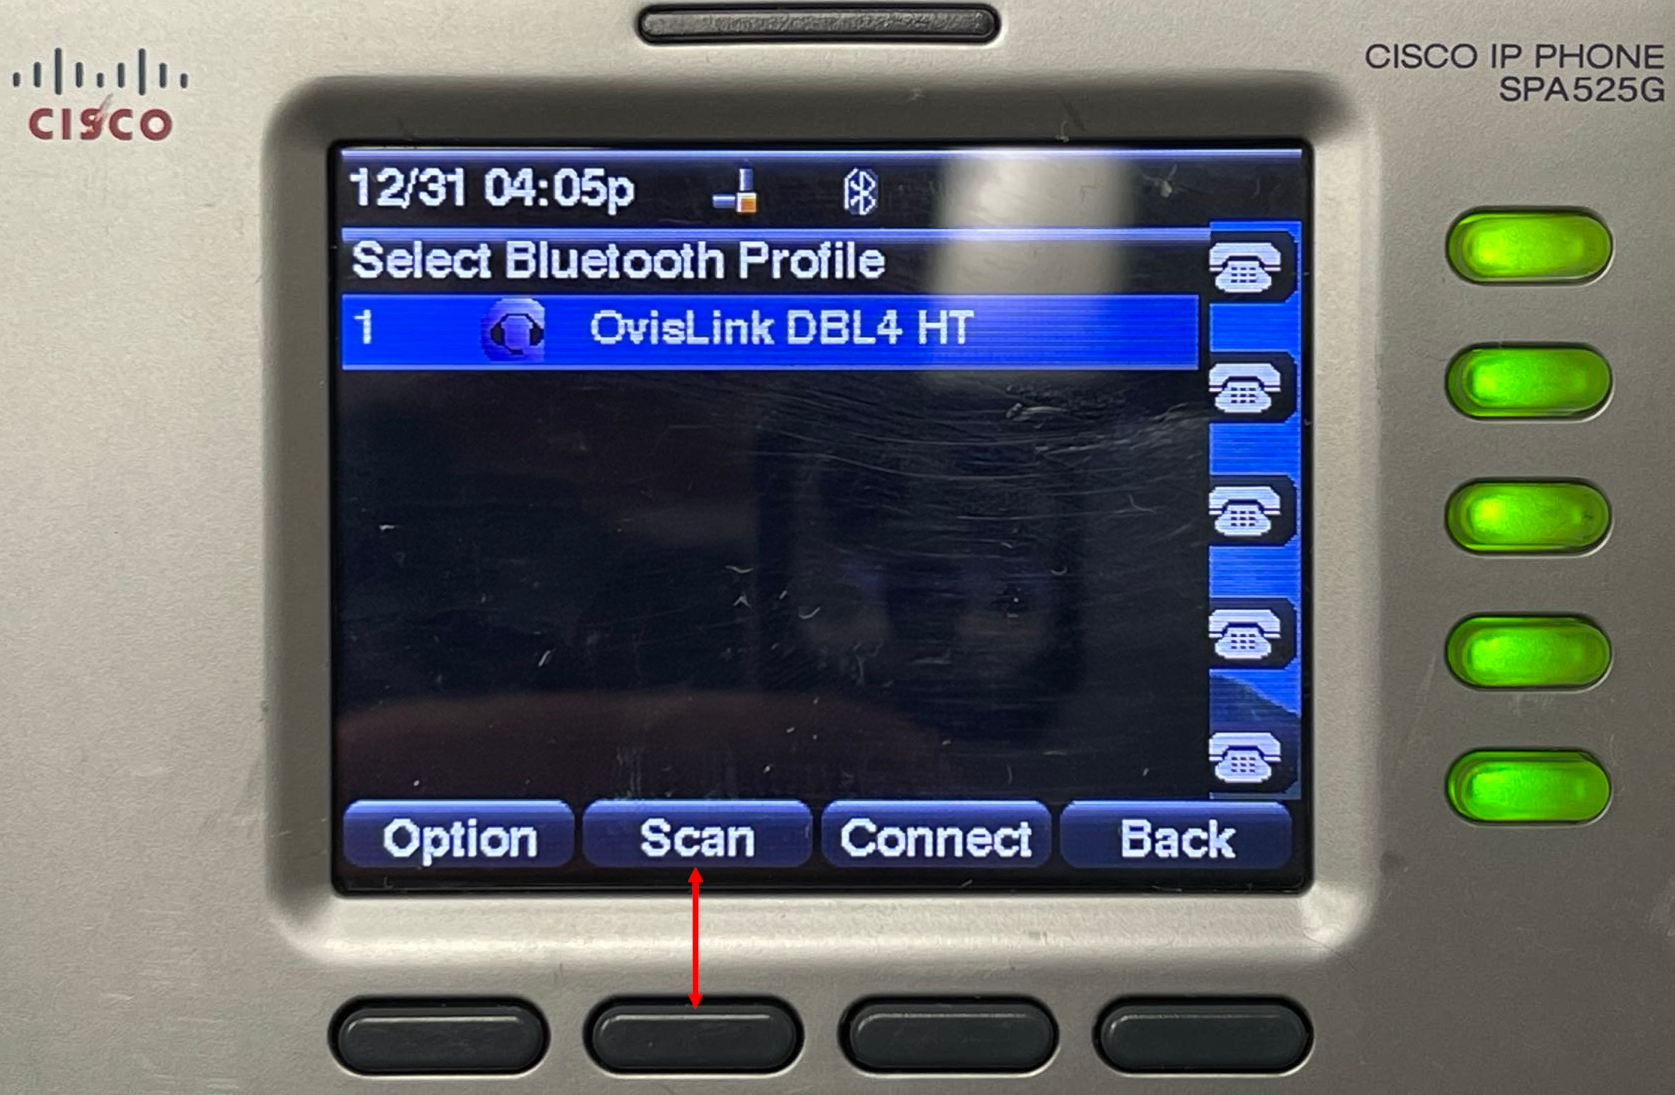 Cisco SPA 525G Scan button